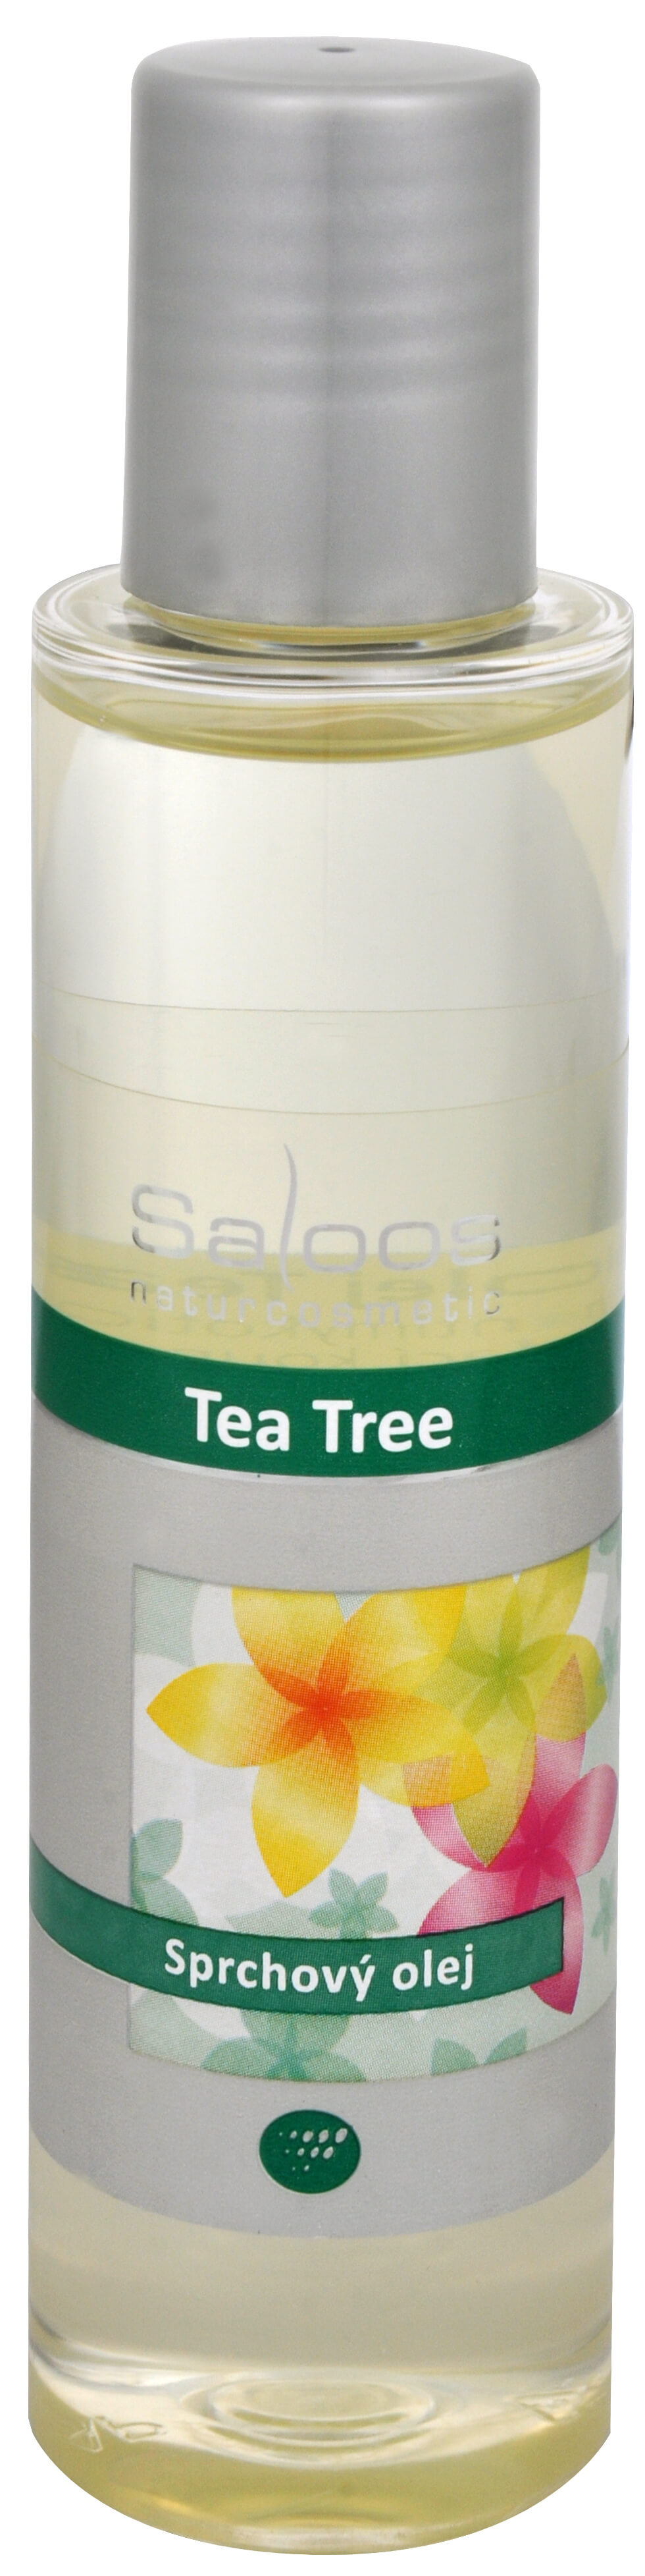 Zobrazit detail výrobku Saloos Sprchový olej - Tea Tree 125 ml + 2 měsíce na vrácení zboží